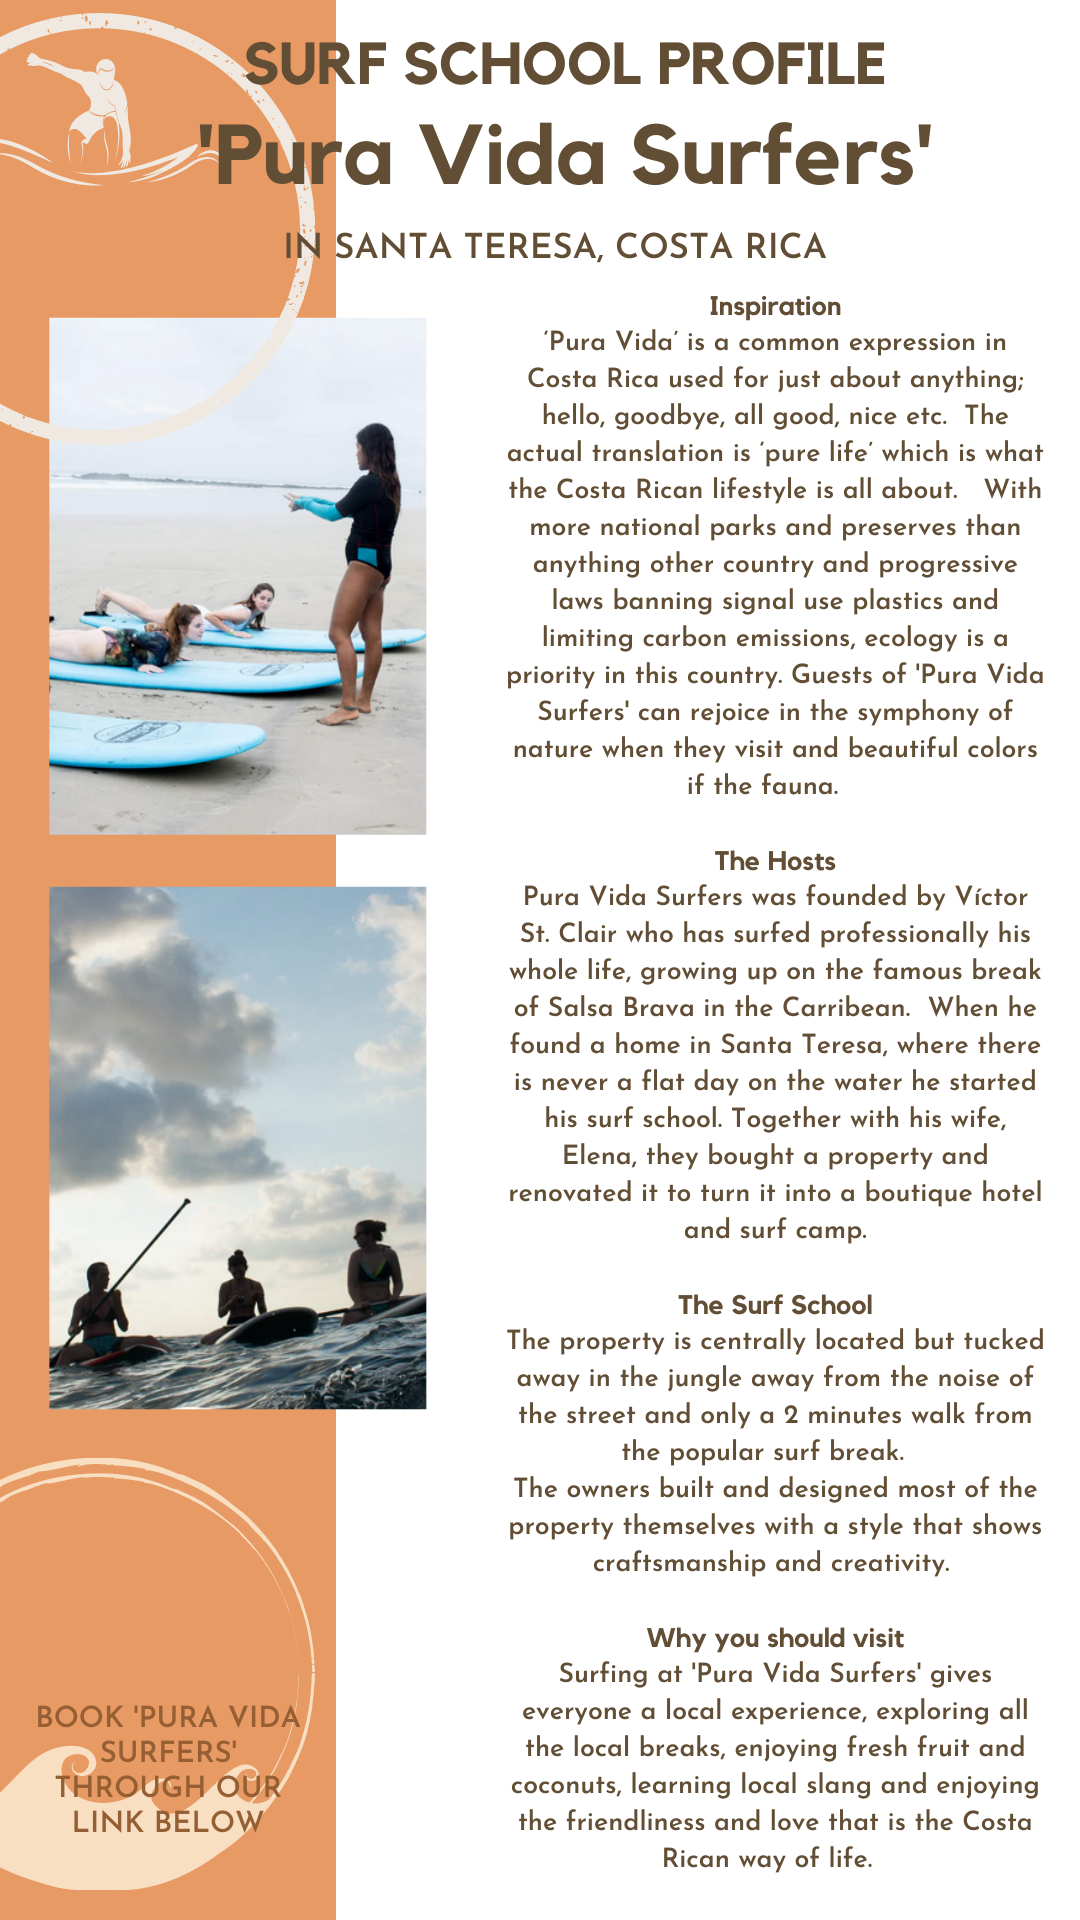 Meet the Host - Pura Vida Surf School